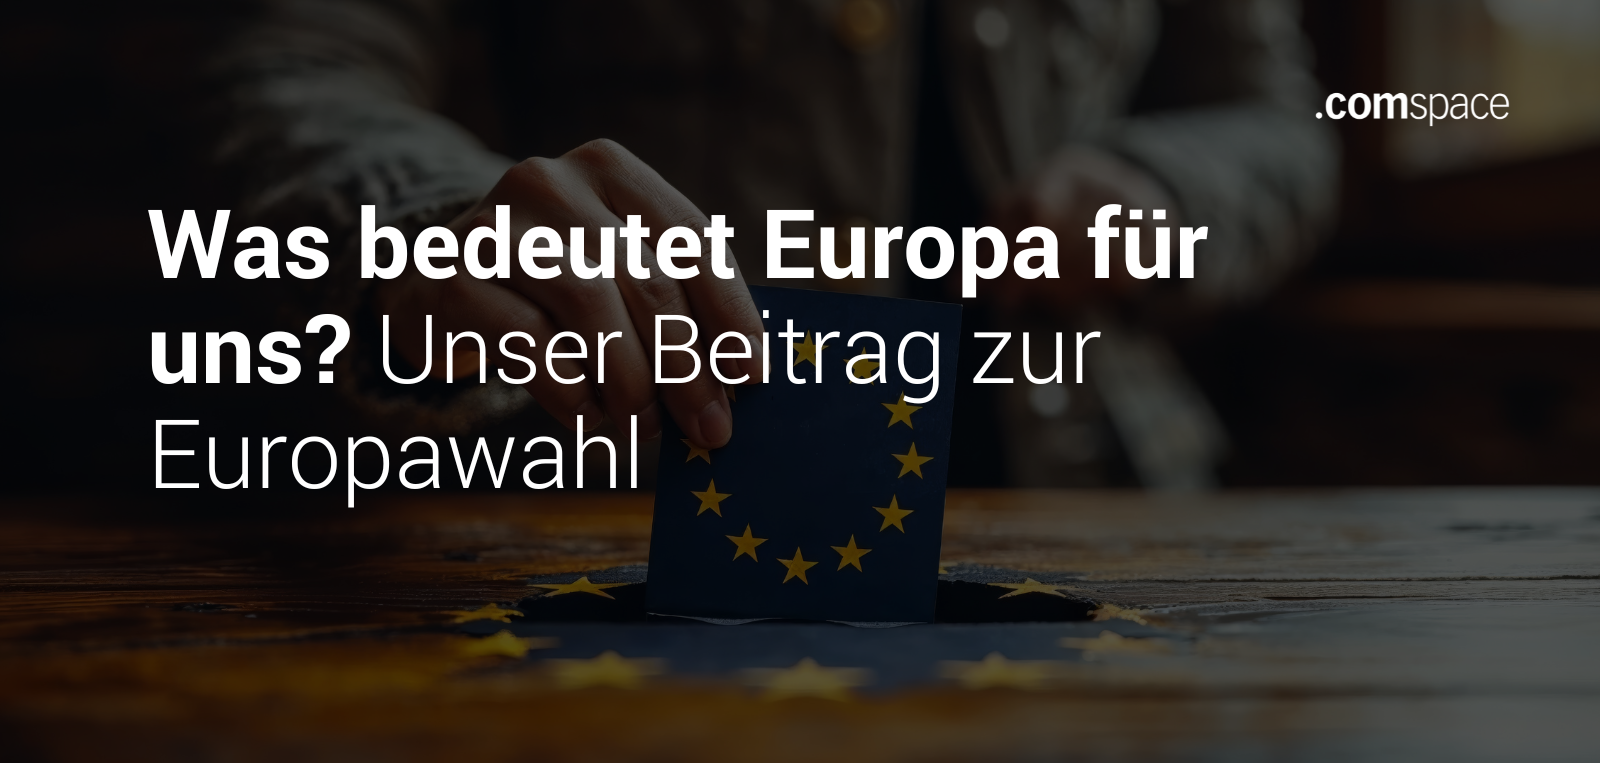 Es geht um die Bedeutung von Europa und unseren Beitrag zur Europawahl. Das Bild zeigt einen Wahlzettel mit der Europaflagge darauf, der von einer Hand in eine Wahlurne geworden wird.